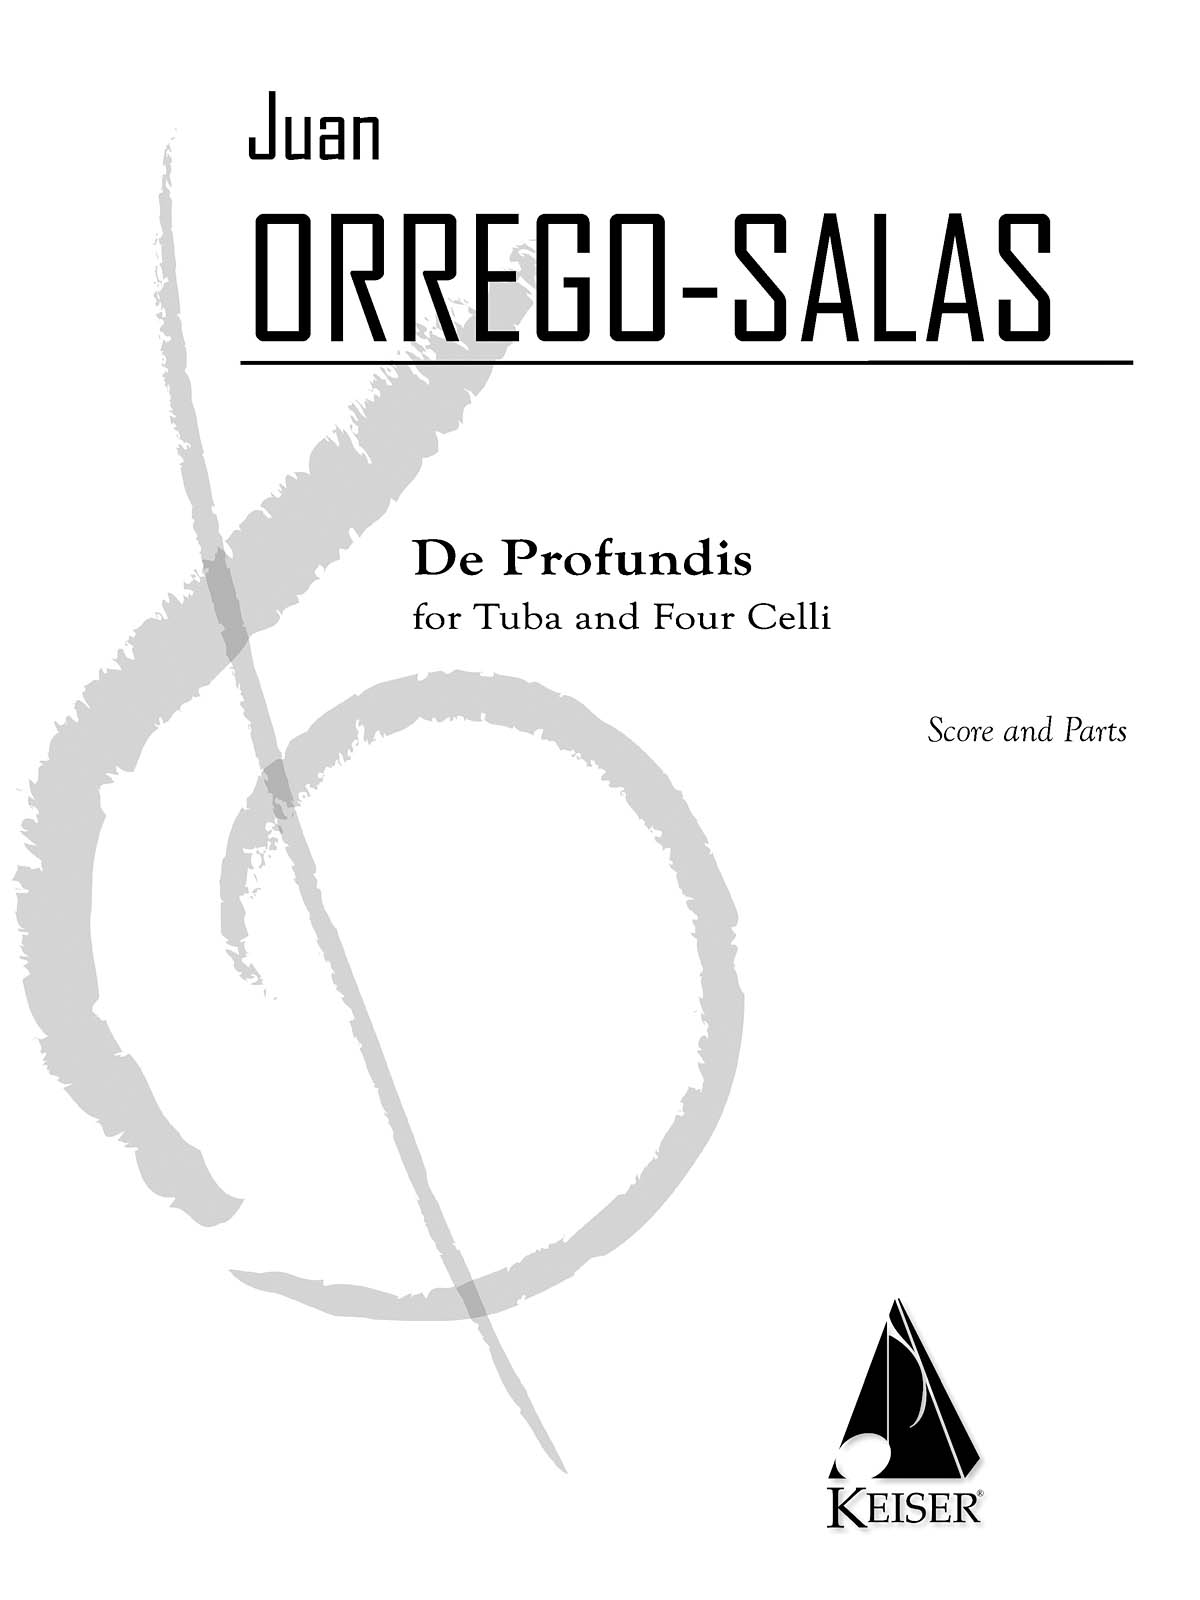 De Profundis(For Tuba and 4 Cellos)